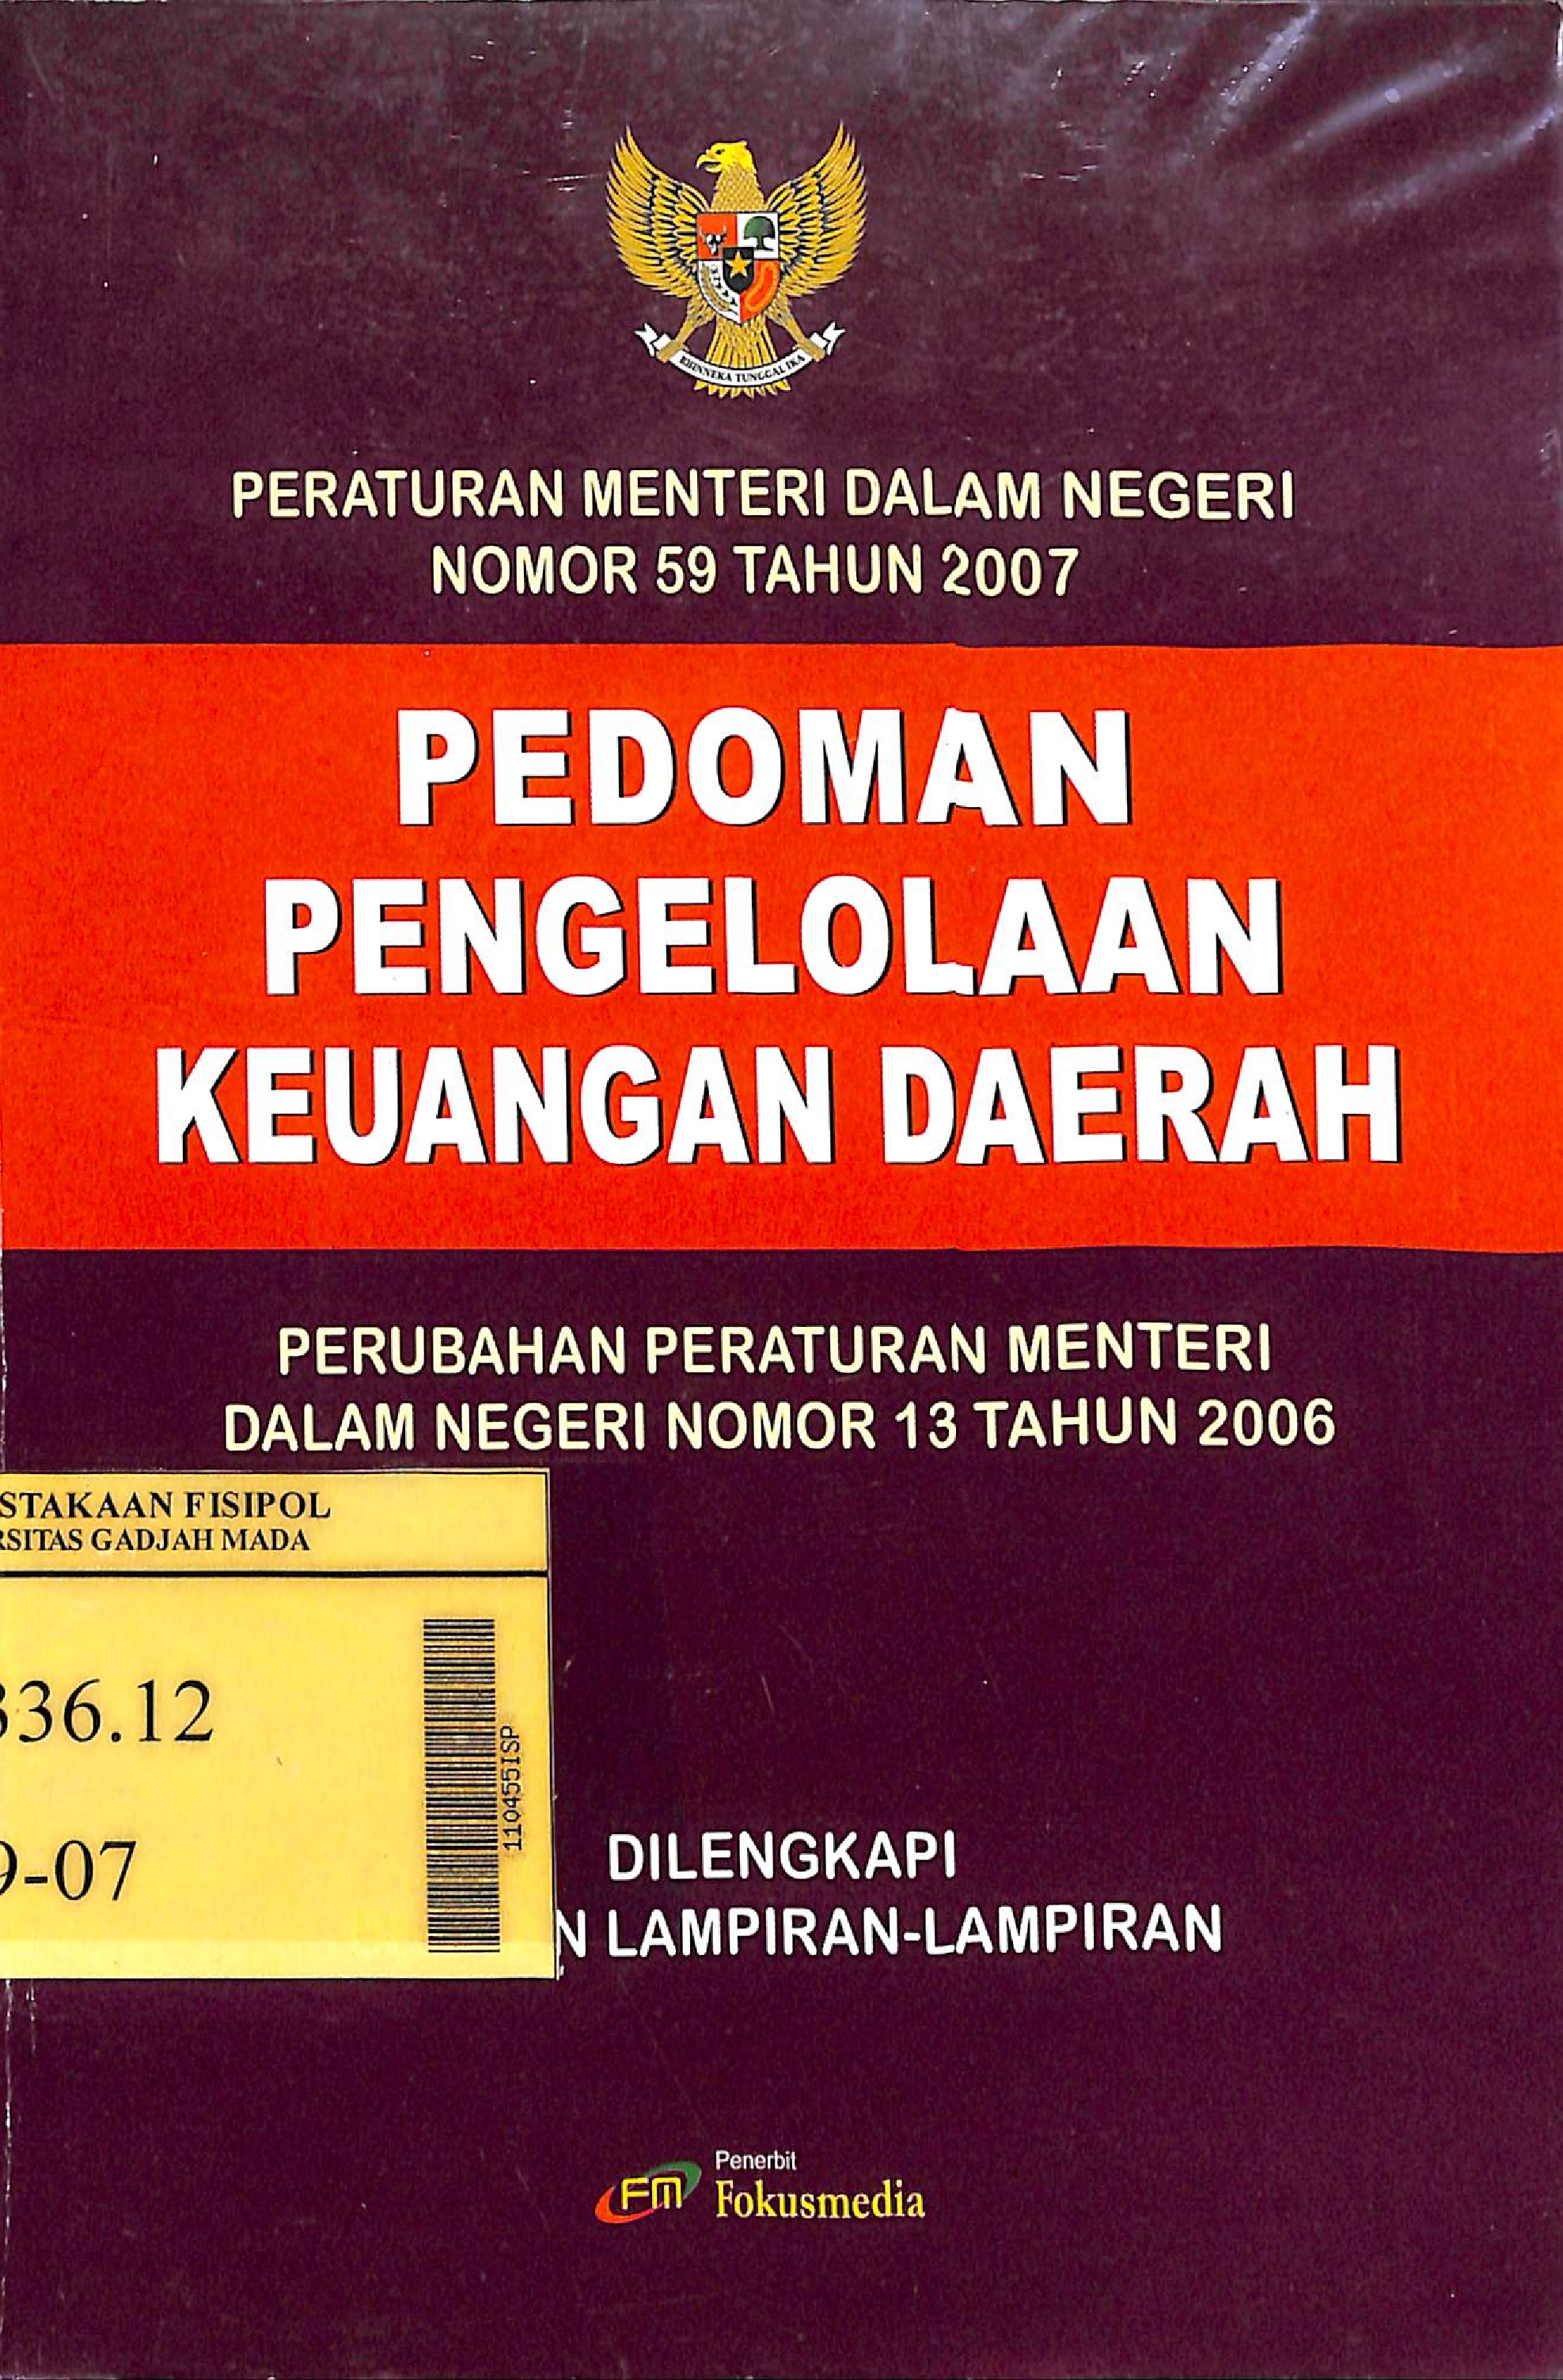 Peraturan Menteri Dalam Negeri Nomor 59 Tahun 2007 Tentang Pedoman Pengelolaan Keuangan Daerah :  Perubahan Peraturan Menteri Dalam Negeri Nomor 13 Tahun 2006